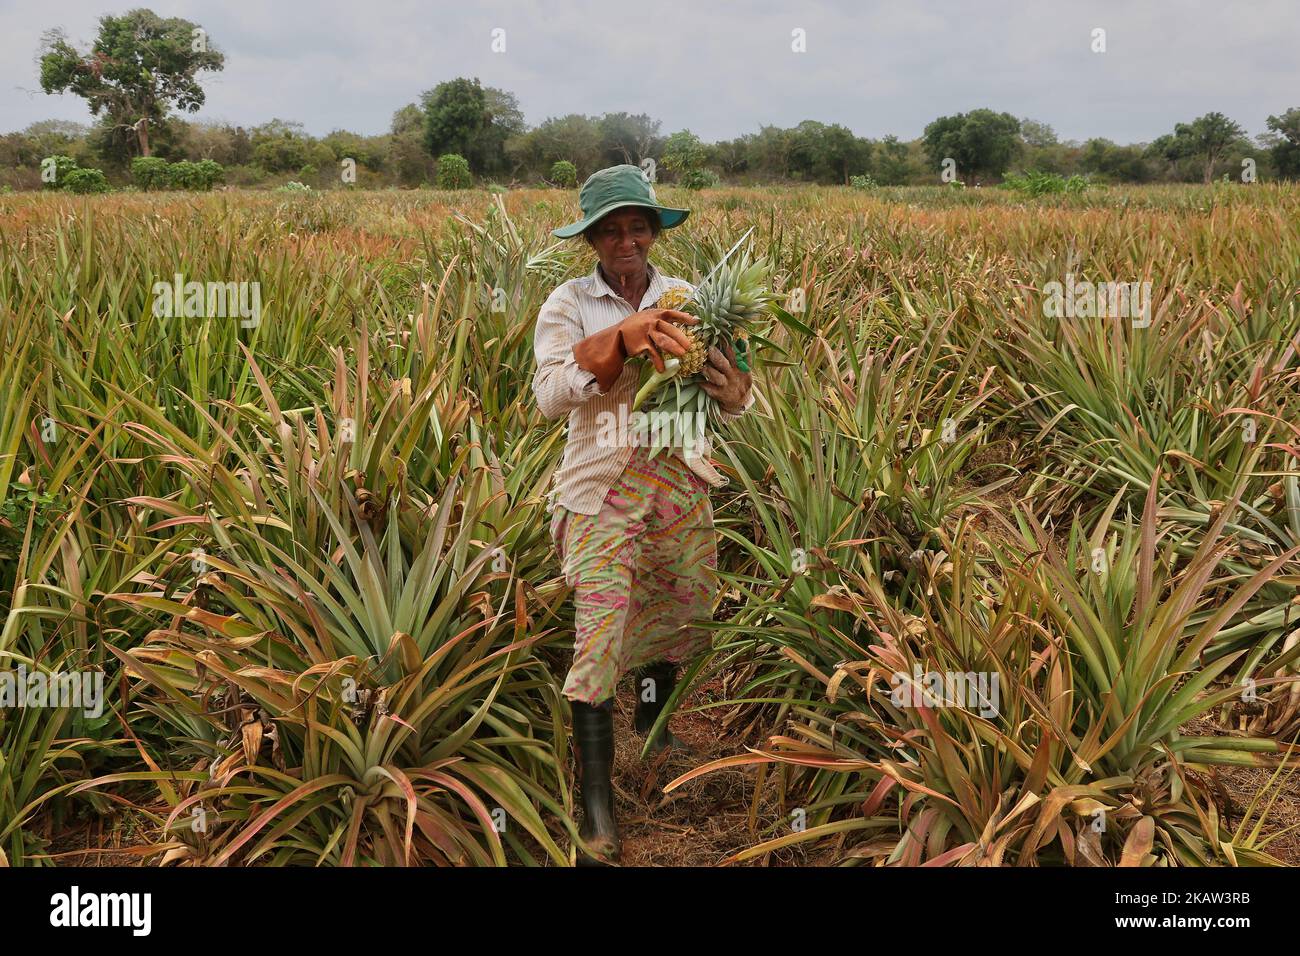 Une femme tamoule cueille des ananas dans une ferme d'ananas située dans une région reculée de Mannar, au Sri Lanka. Cette ferme cultive des ananas biologiques et bio-dynamiques et emploie des travailleurs agricoles vivant dans des régions défavorisées du Sri Lanka pour améliorer leur niveau de vie. (Photo de Creative Touch Imaging Ltd./NurPhoto) Banque D'Images